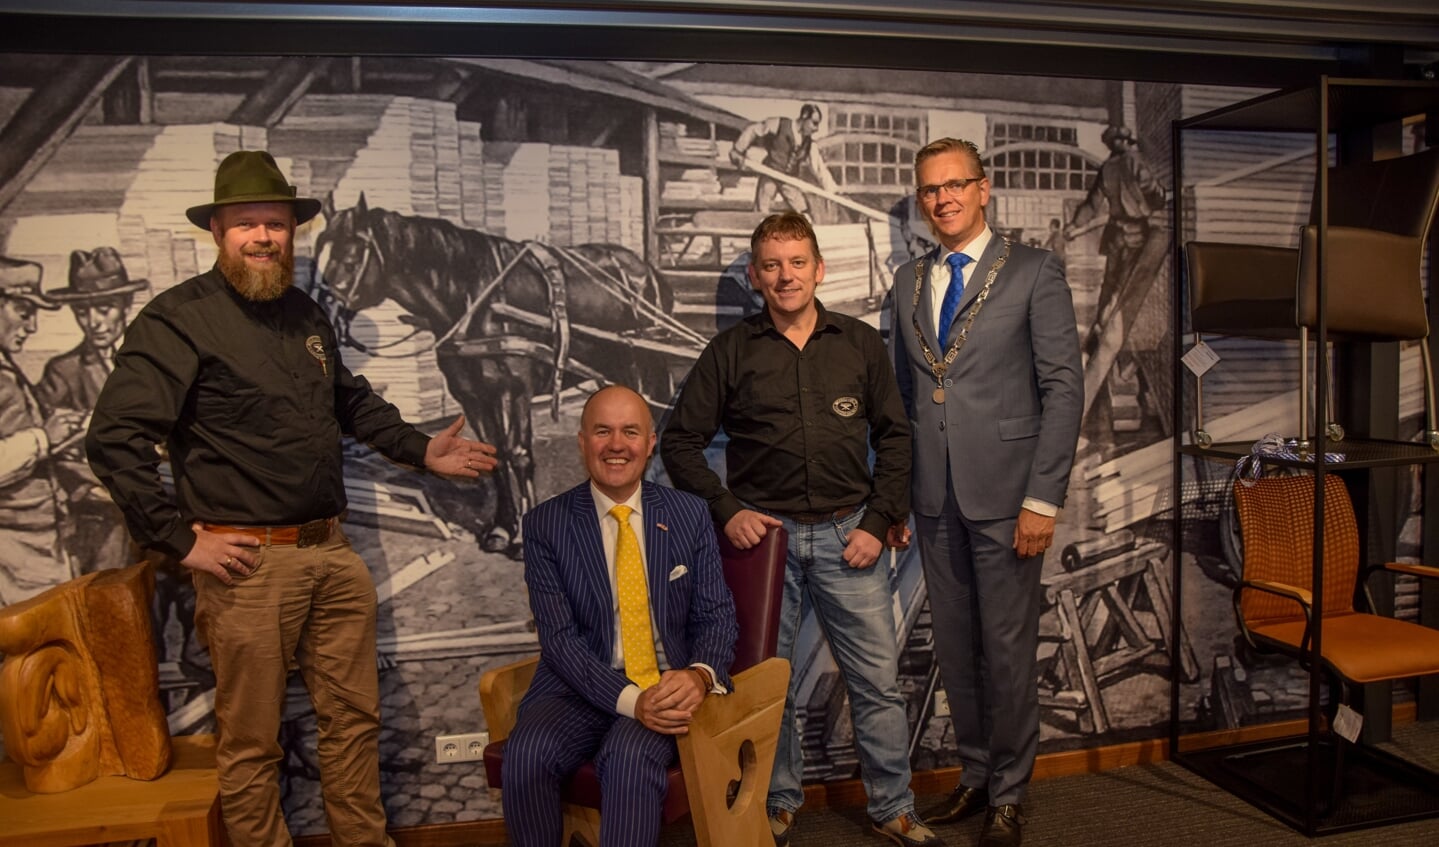 Seye Herke Brinkman, commissaris van de Koning Arno Brok, ondernemer Feico Westra en burgemeester Jeroen Gebben tijdens de opening van de vernieuwde Meubelfabriek. 